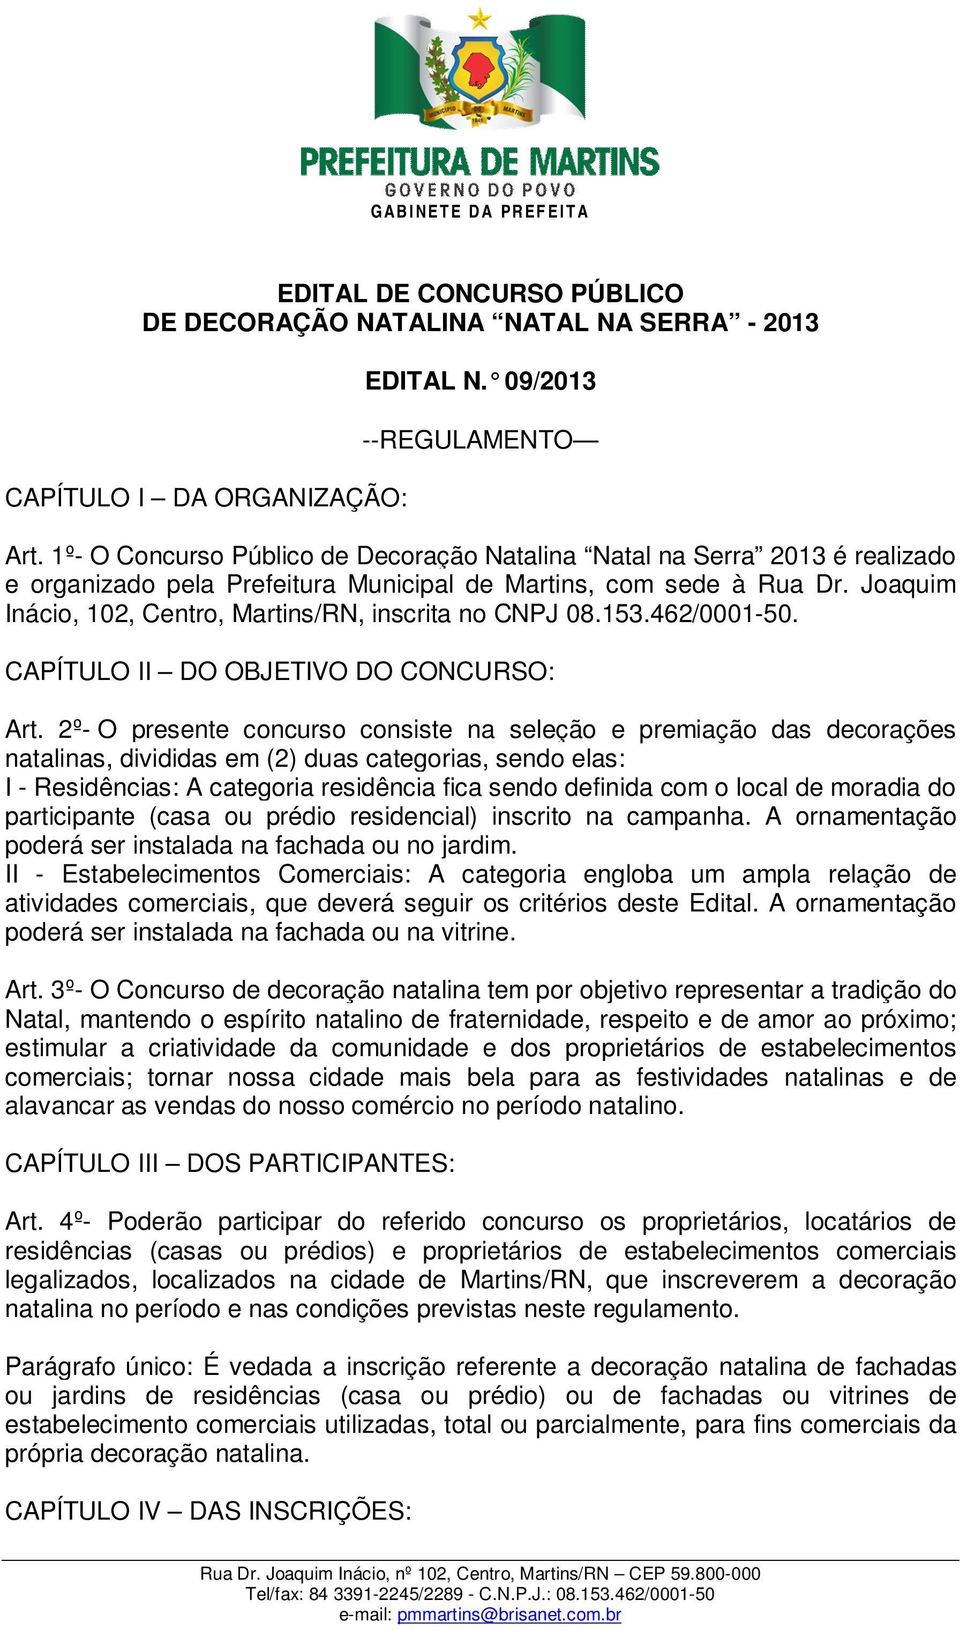 Joaquim Inácio, 102, Centro, Martins/RN, inscrita no CNPJ 08.153.462/0001-50. CAPÍTULO II DO OBJETIVO DO CONCURSO: Art.